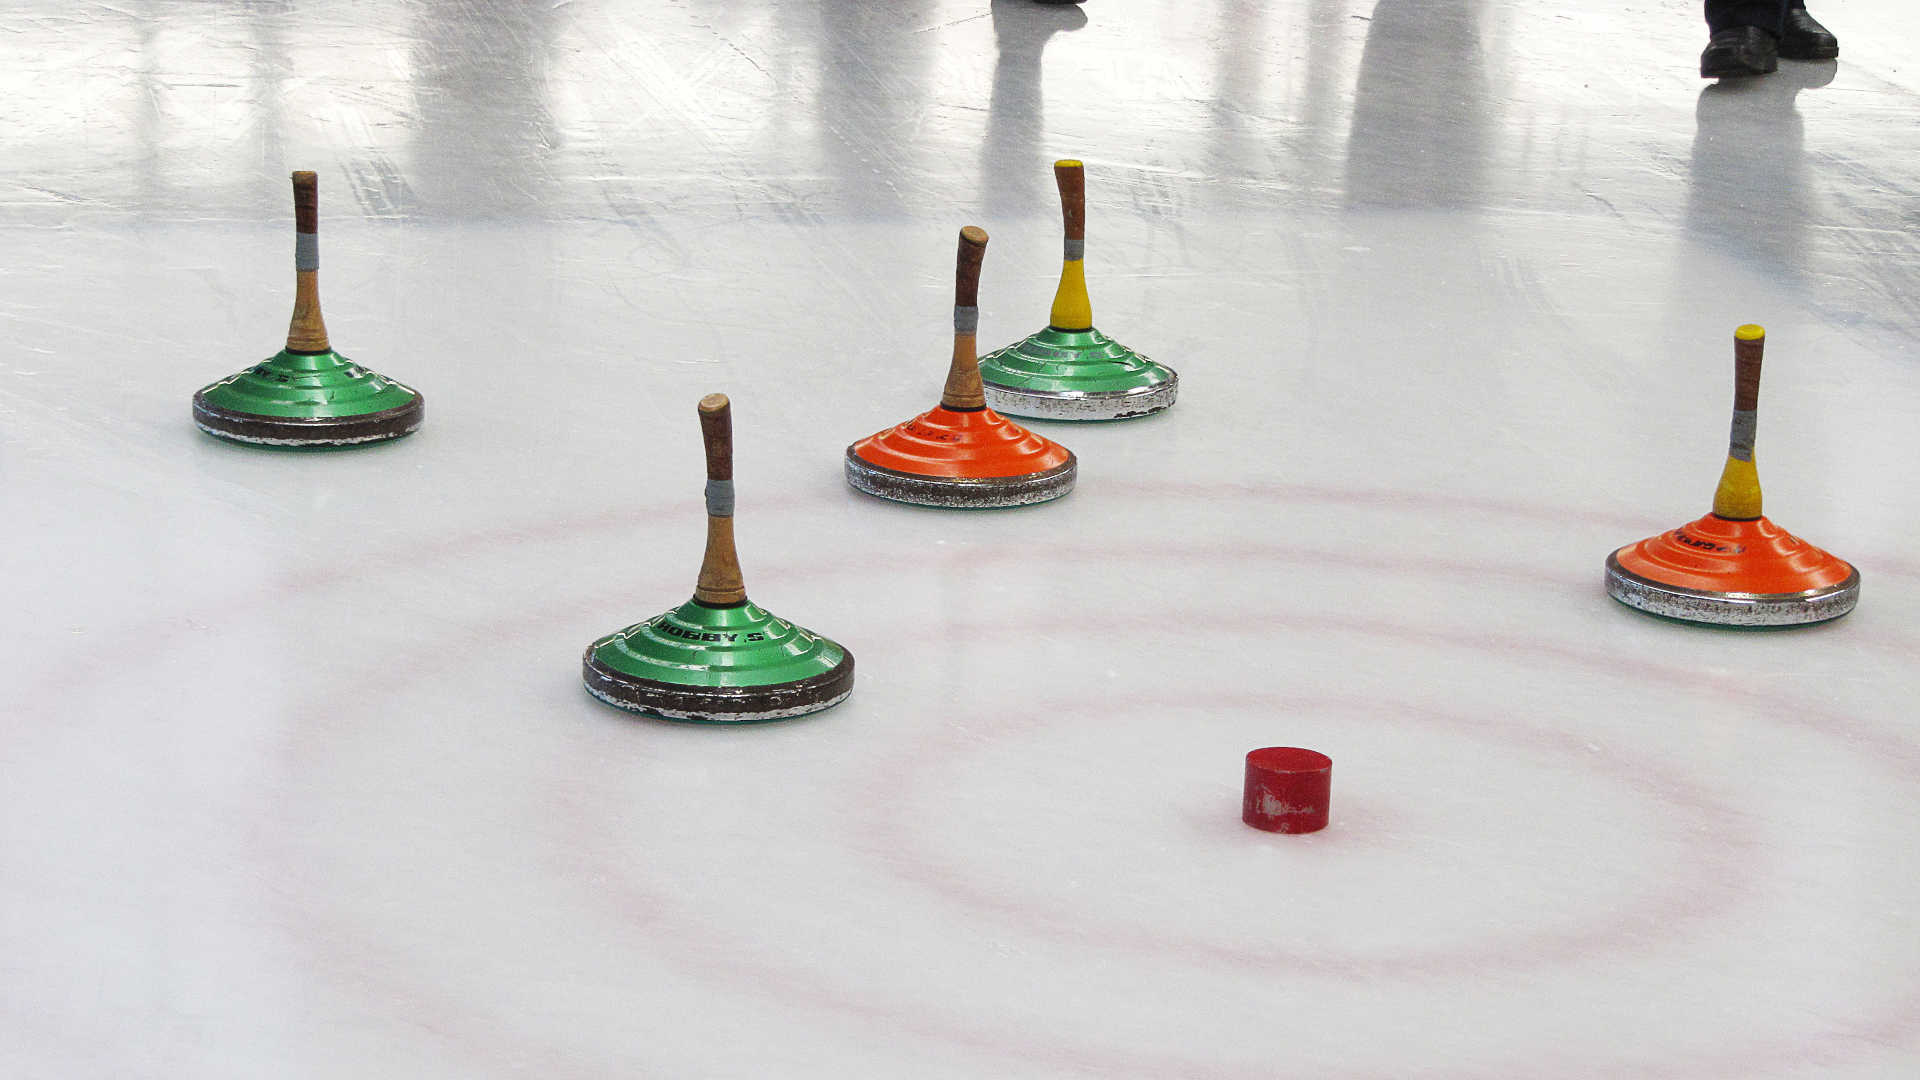 Zwei grüne und zwei orange-farbene Eisstöcke liegen an den Zielkreisen in der Nähe der roten Daube.